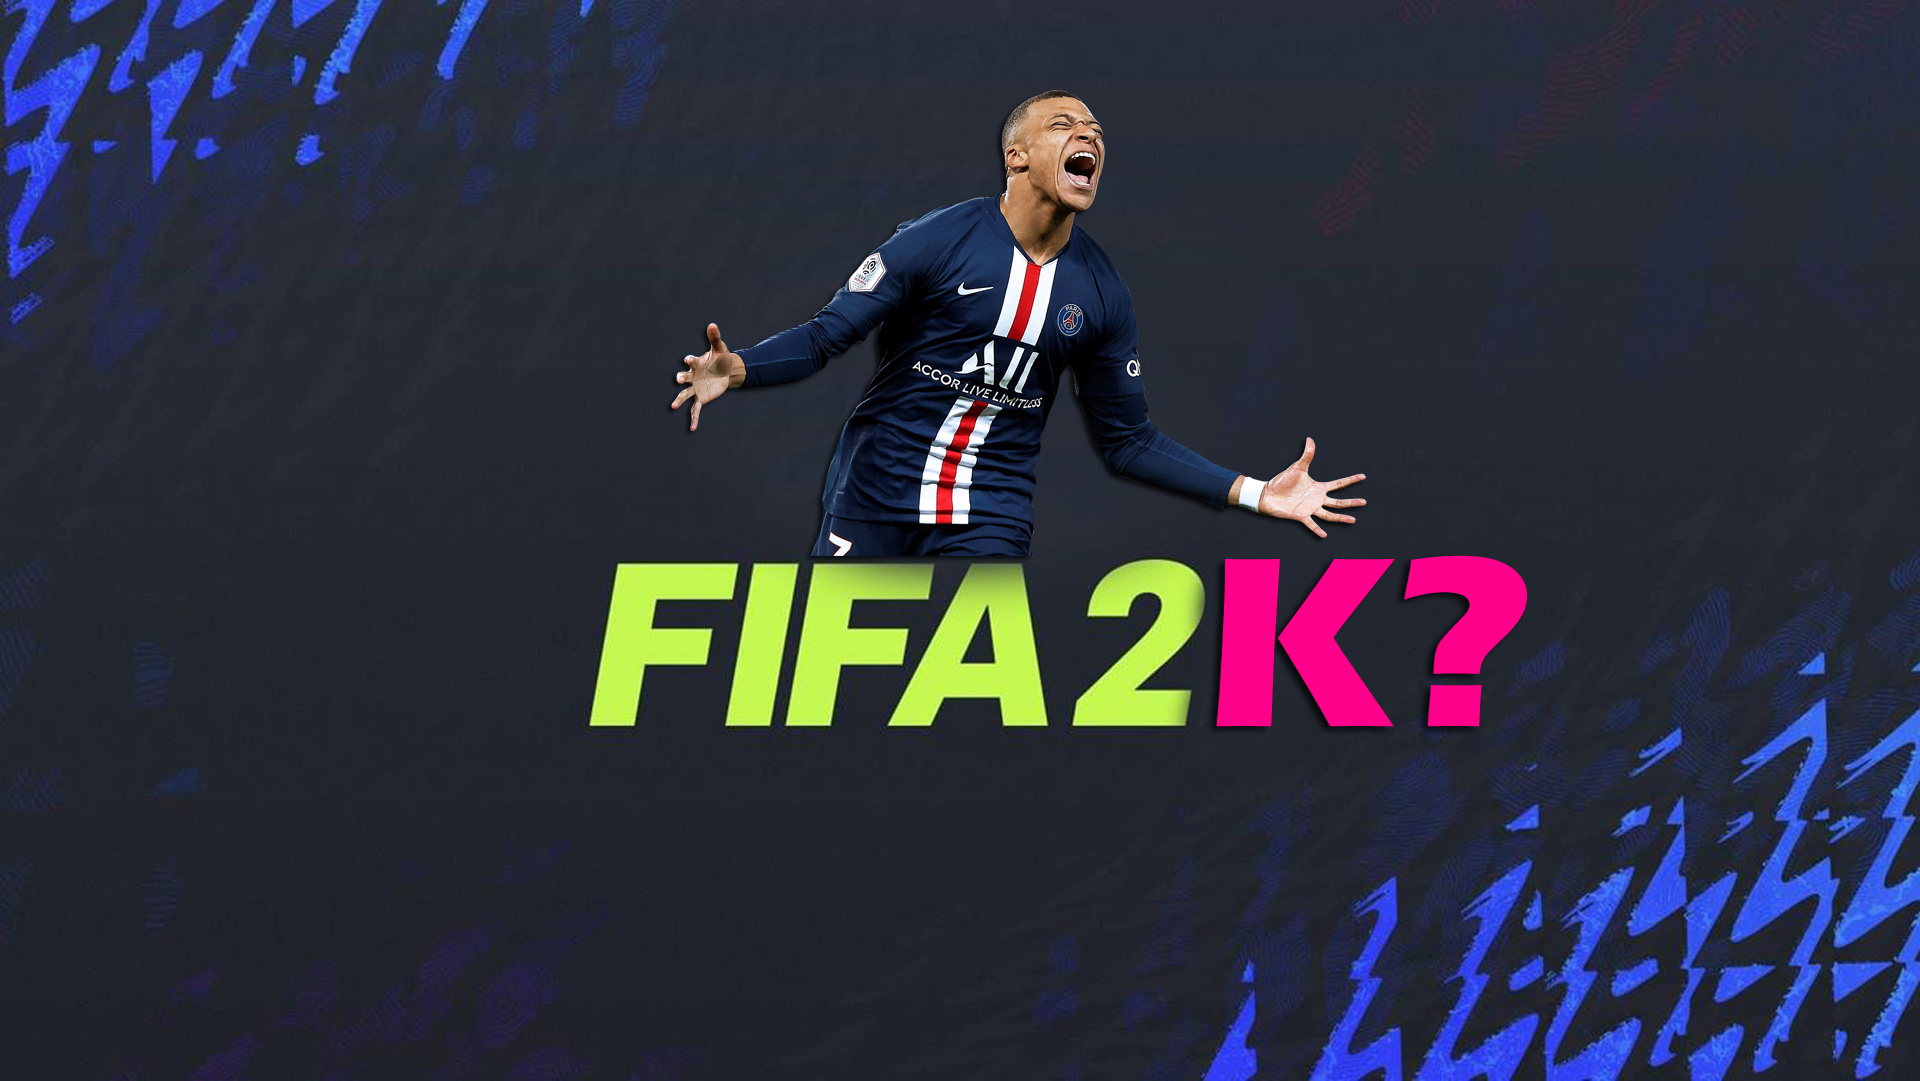 O novo jogo FIFA está chegando!  Então, qual empresa irá desenvolvê-lo?